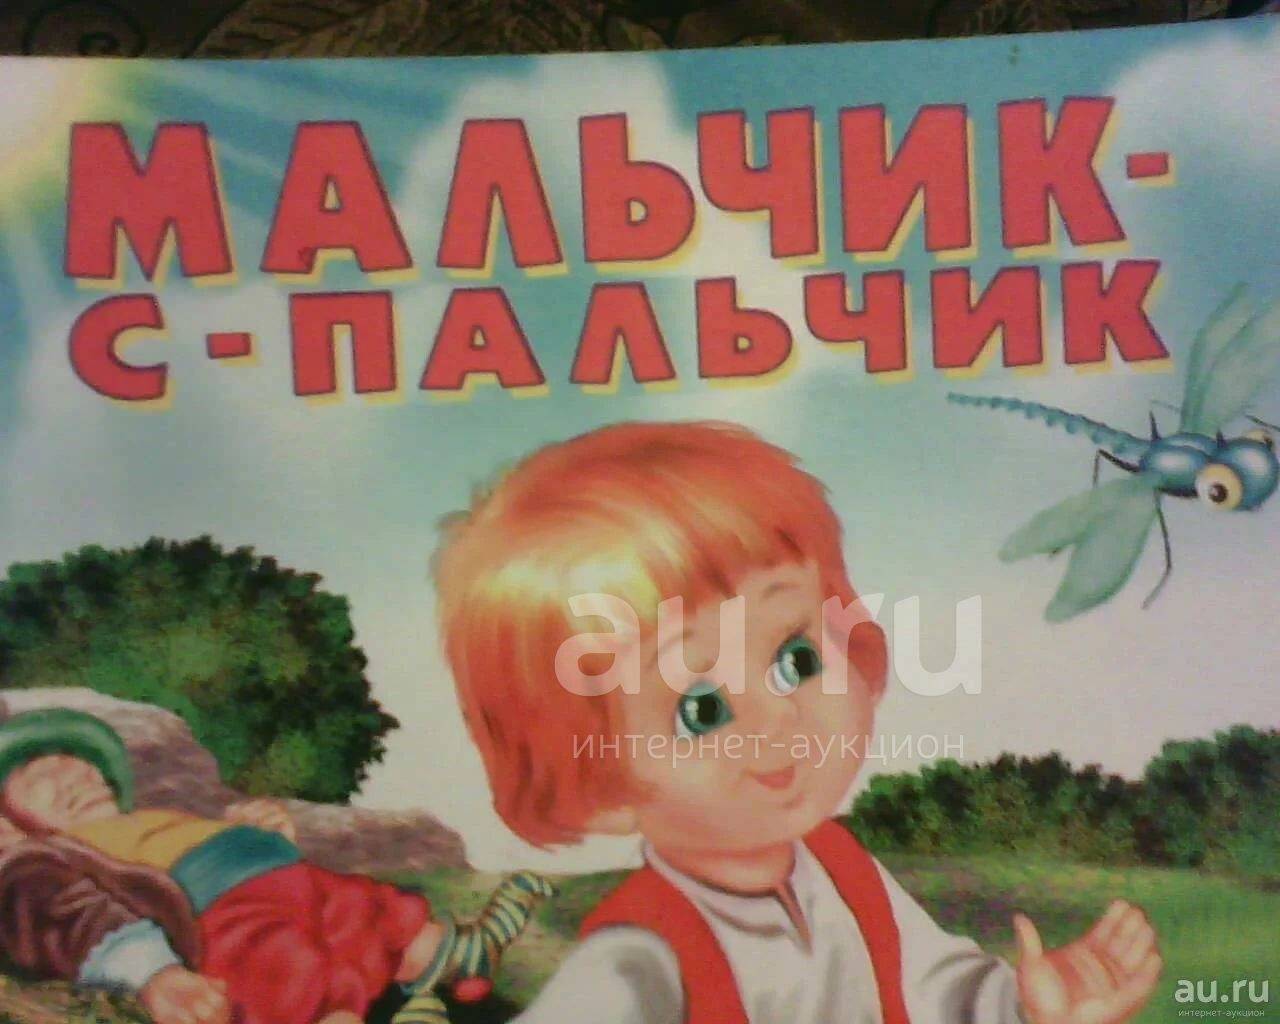 Мальчик с пальчик русская народная сказка читать. Мальчик с пальчик. Мальчик-с-пальчик сказка. Мальчик с пальчик иллюстрации к сказке. Рисунок к сказке мальчик с пальчик.